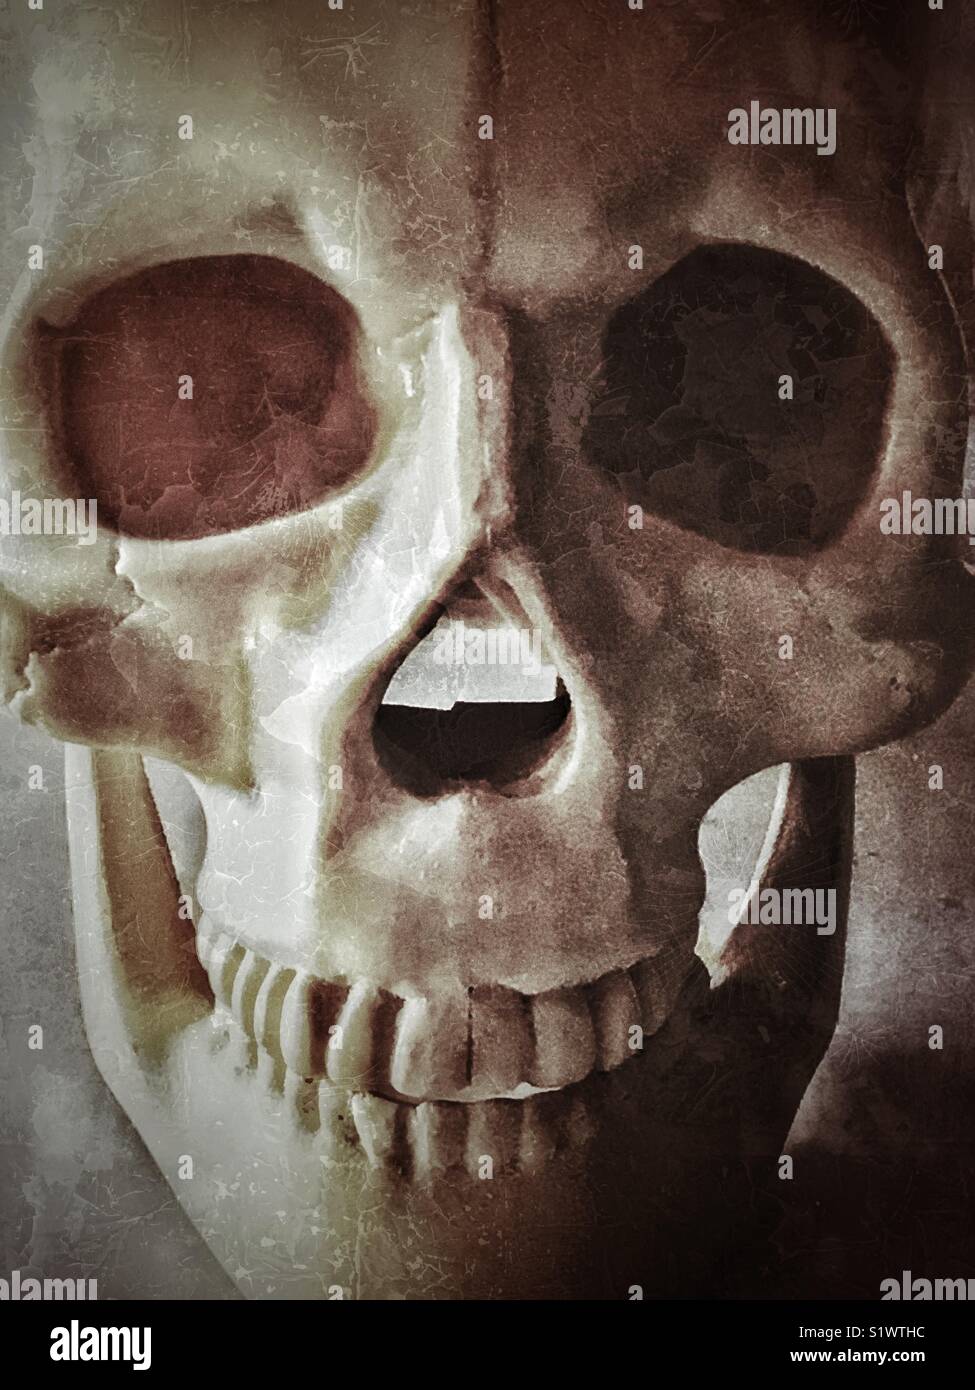 Crâne humain en plastique Banque D'Images